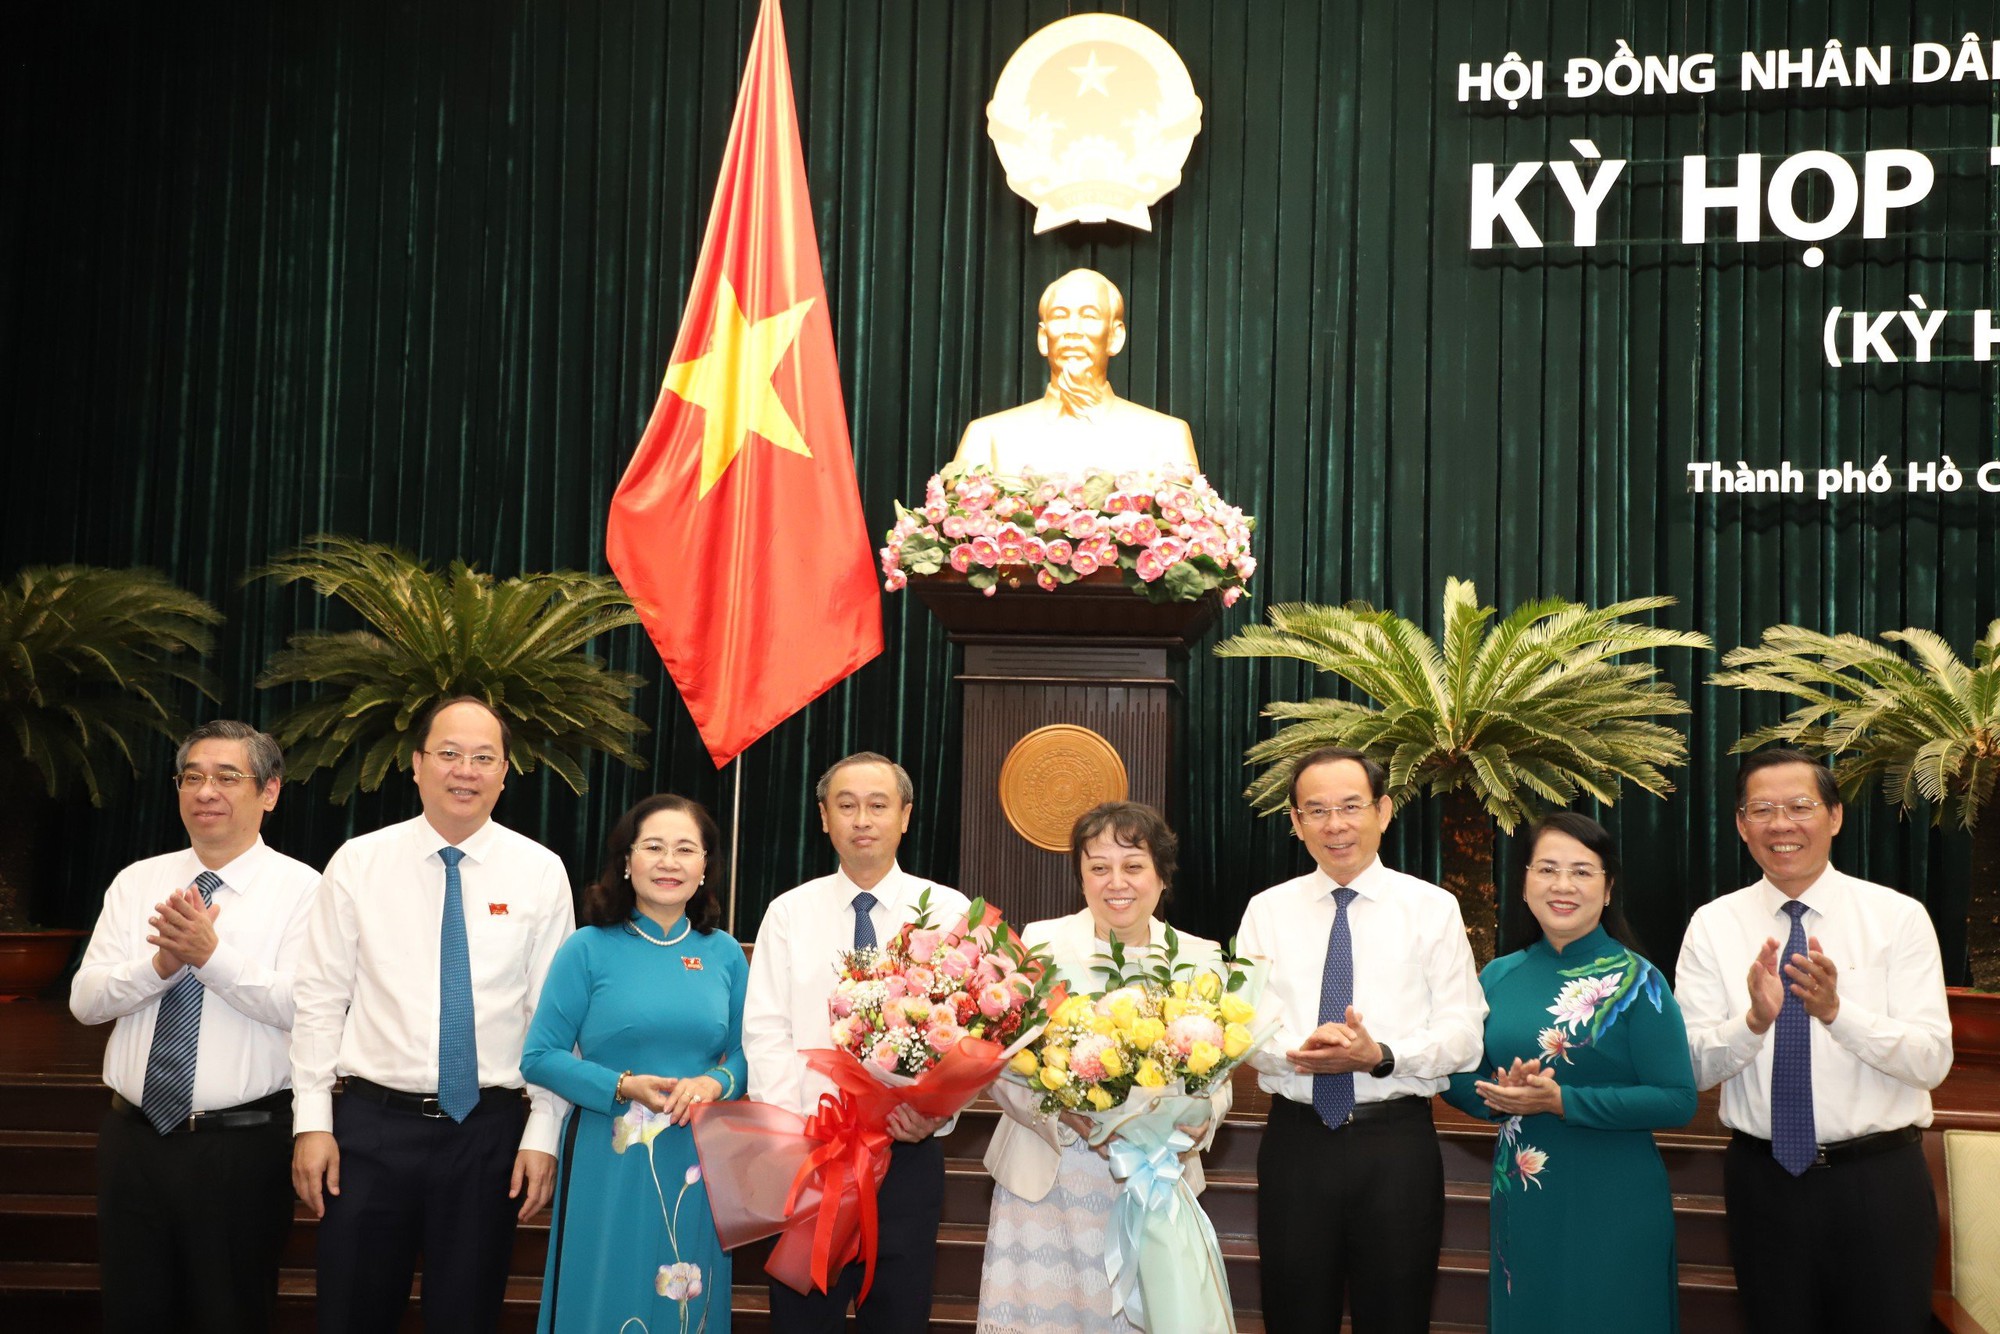 Giám đốc Sở được bầu làm Phó Chủ tịch HĐND, bà Phạm Khánh Phong Lan nhận thêm trọng trách mới- Ảnh 2.